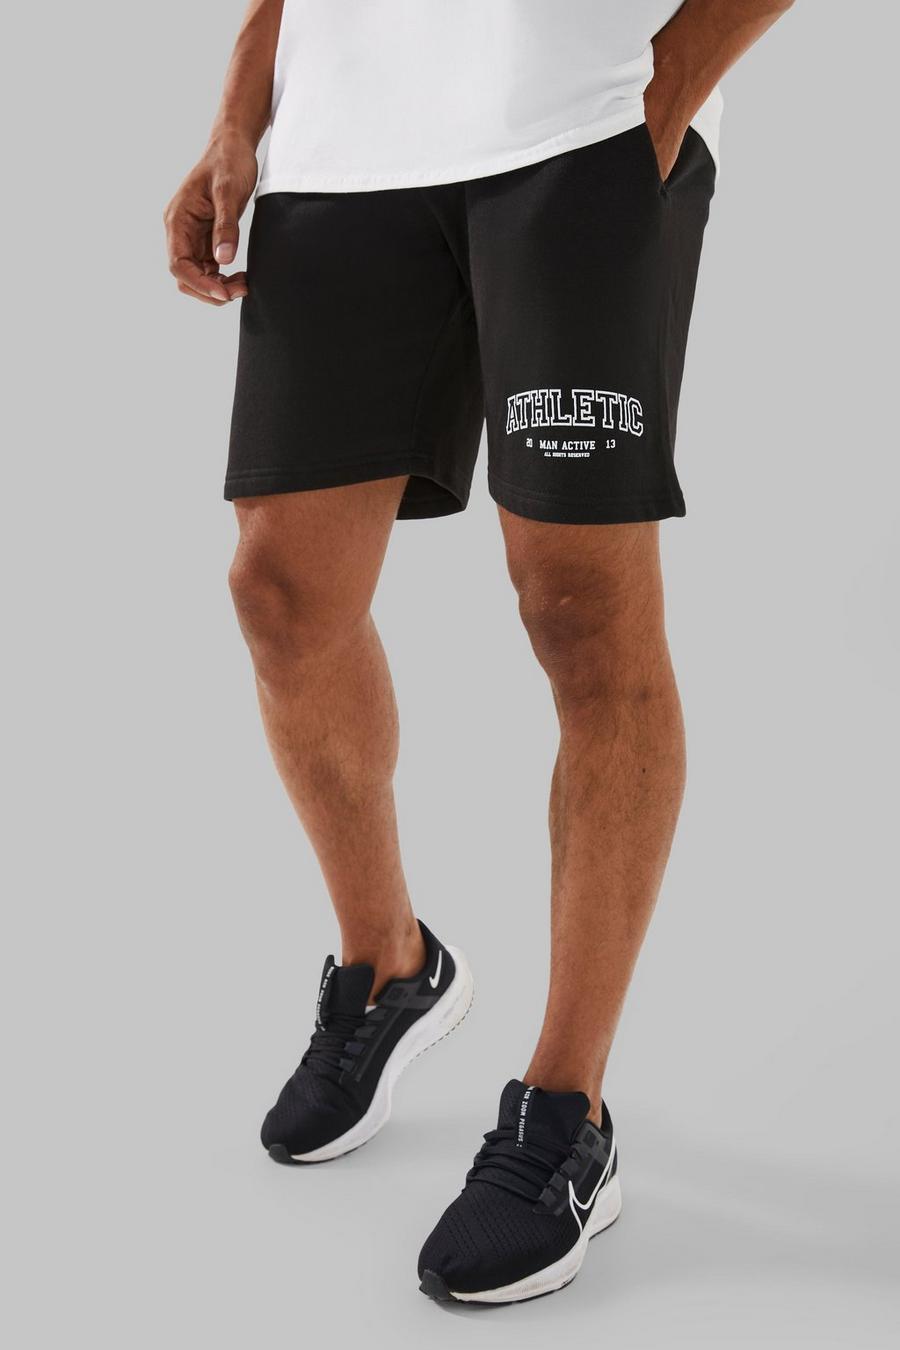 Black noir Man Active Athletic Shorts